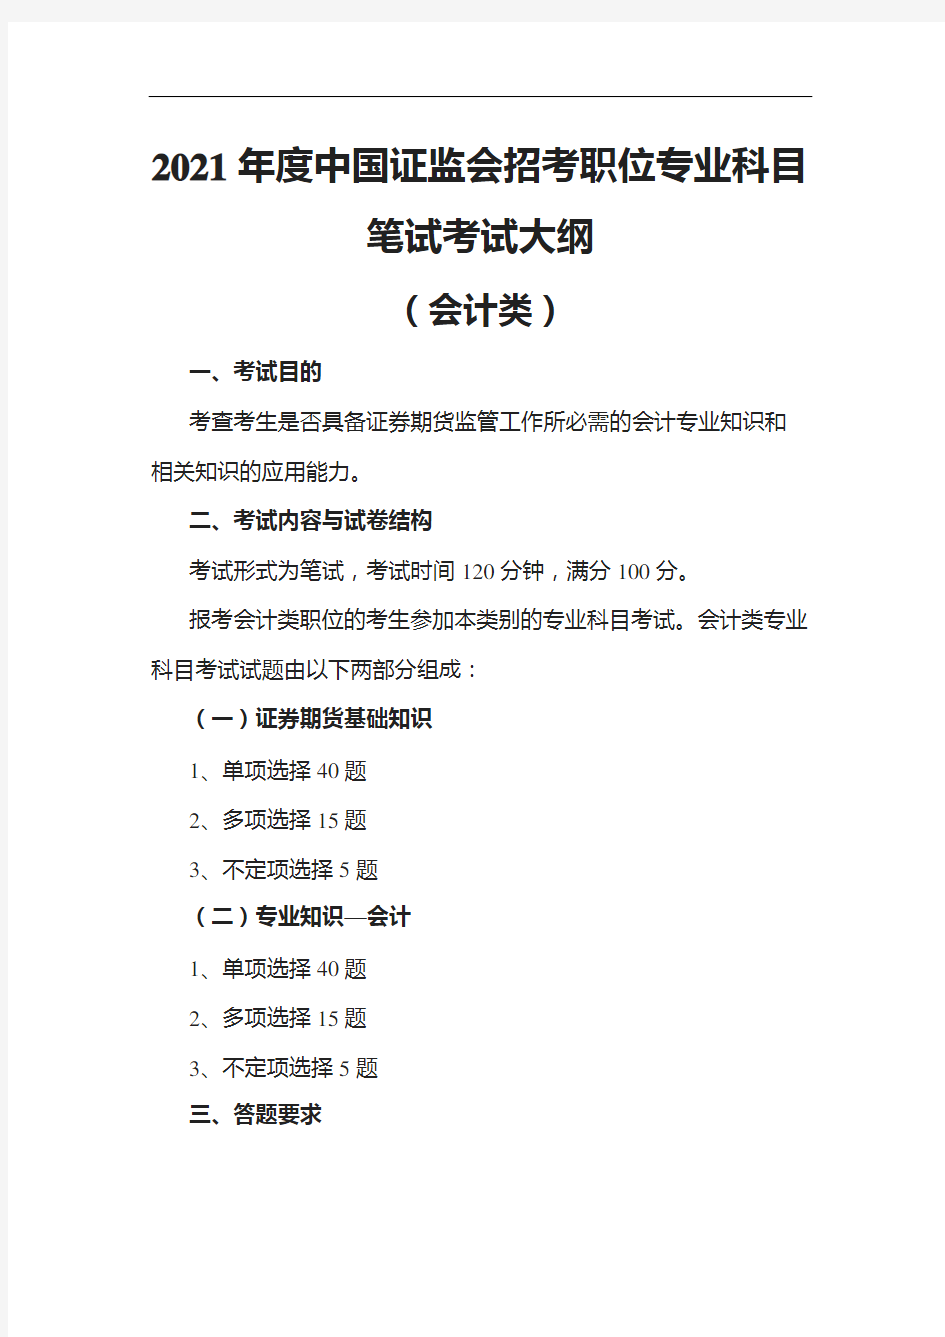 2021年度中国证监会招考职位专业科目笔试考试大纲(会计类)